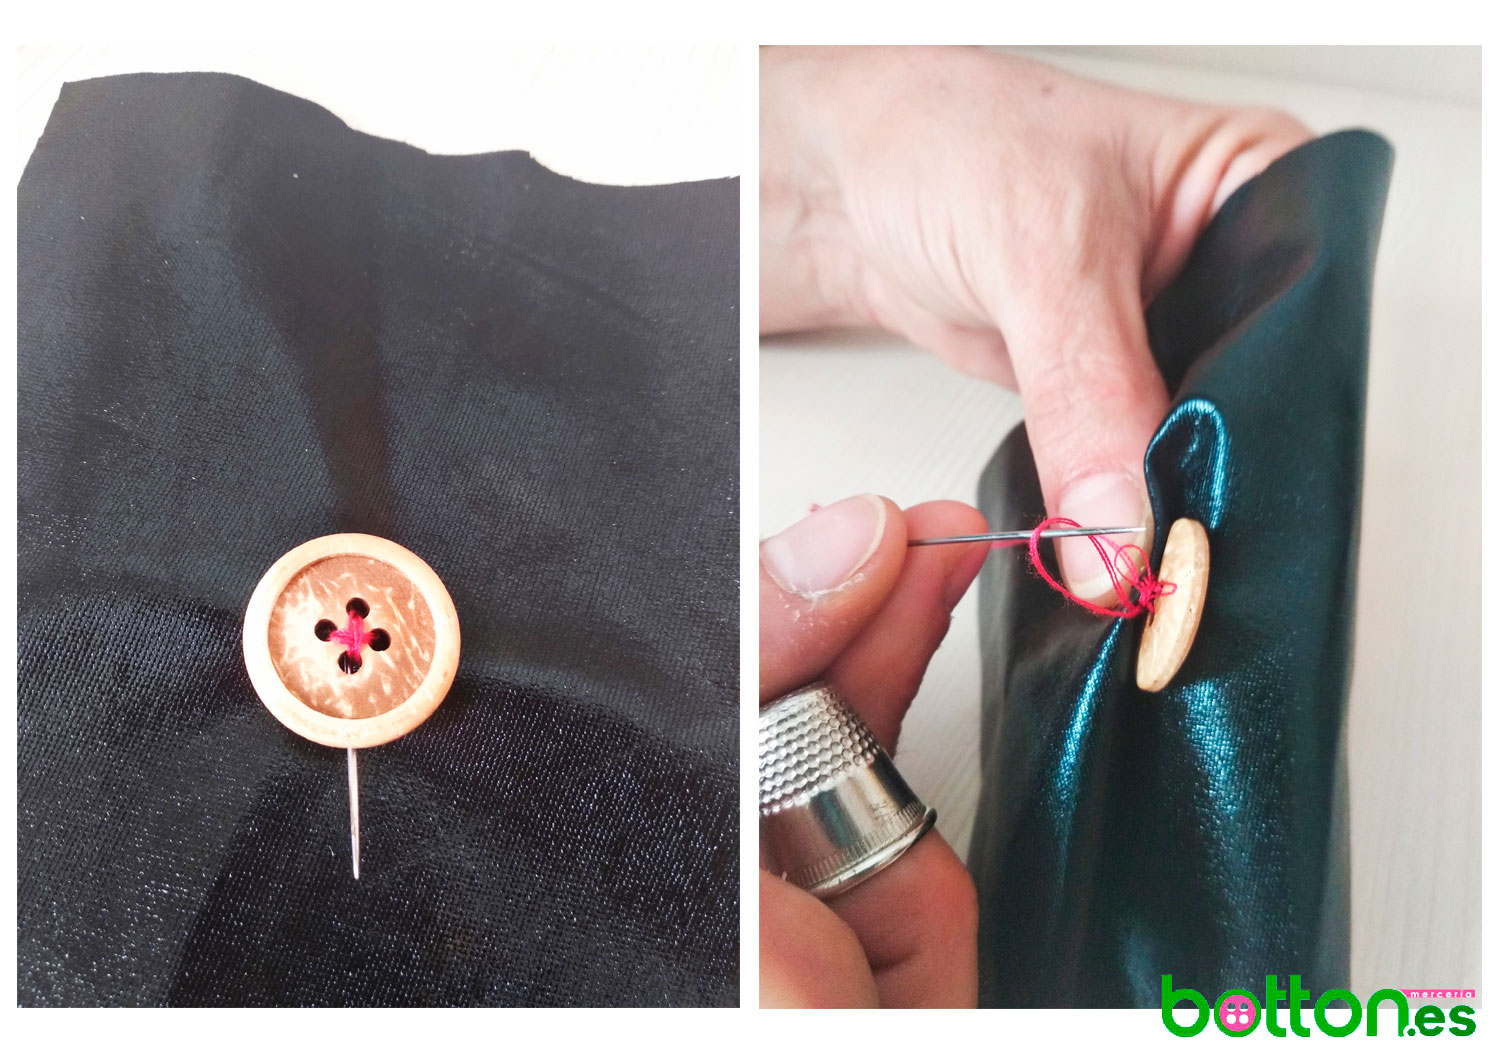 BOTONES boton costura coser aguja De 12 a 180 Entrepiezas Zamak MIS-21